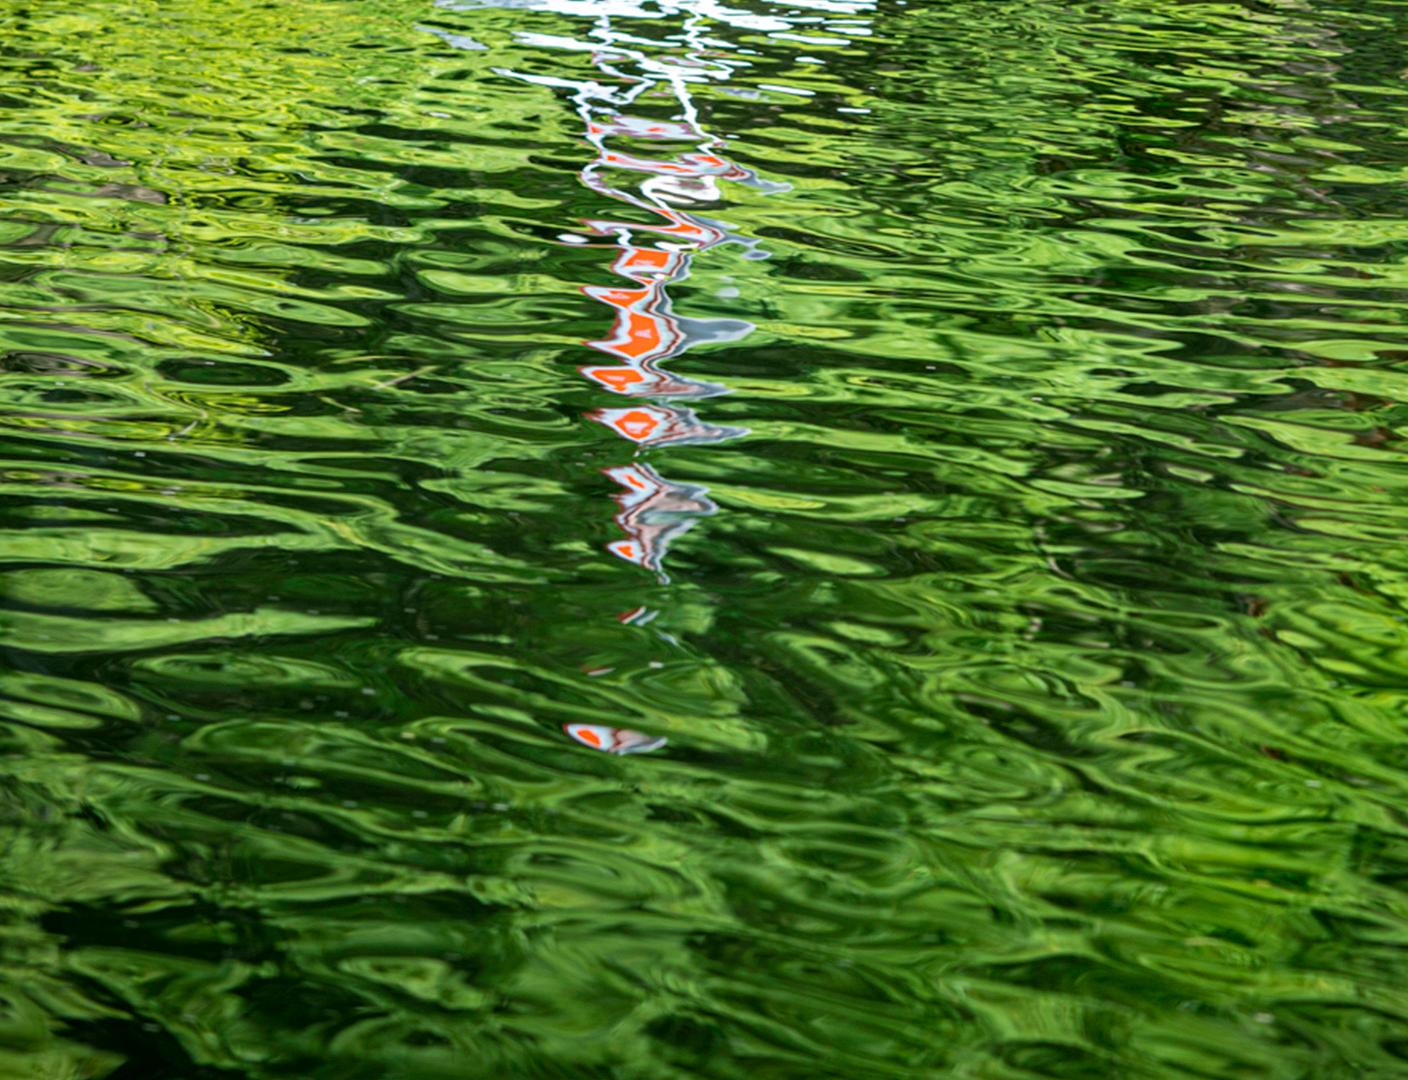 Les eaux ondulantes agissent comme un miroir reflétant le paysage verdoyant éclairé par le soleil et une bouée blanche et rouge dans cette photographie paisible de Shani Mootoo. Le plan a été pris de haut - une perspective rapprochée qui attire